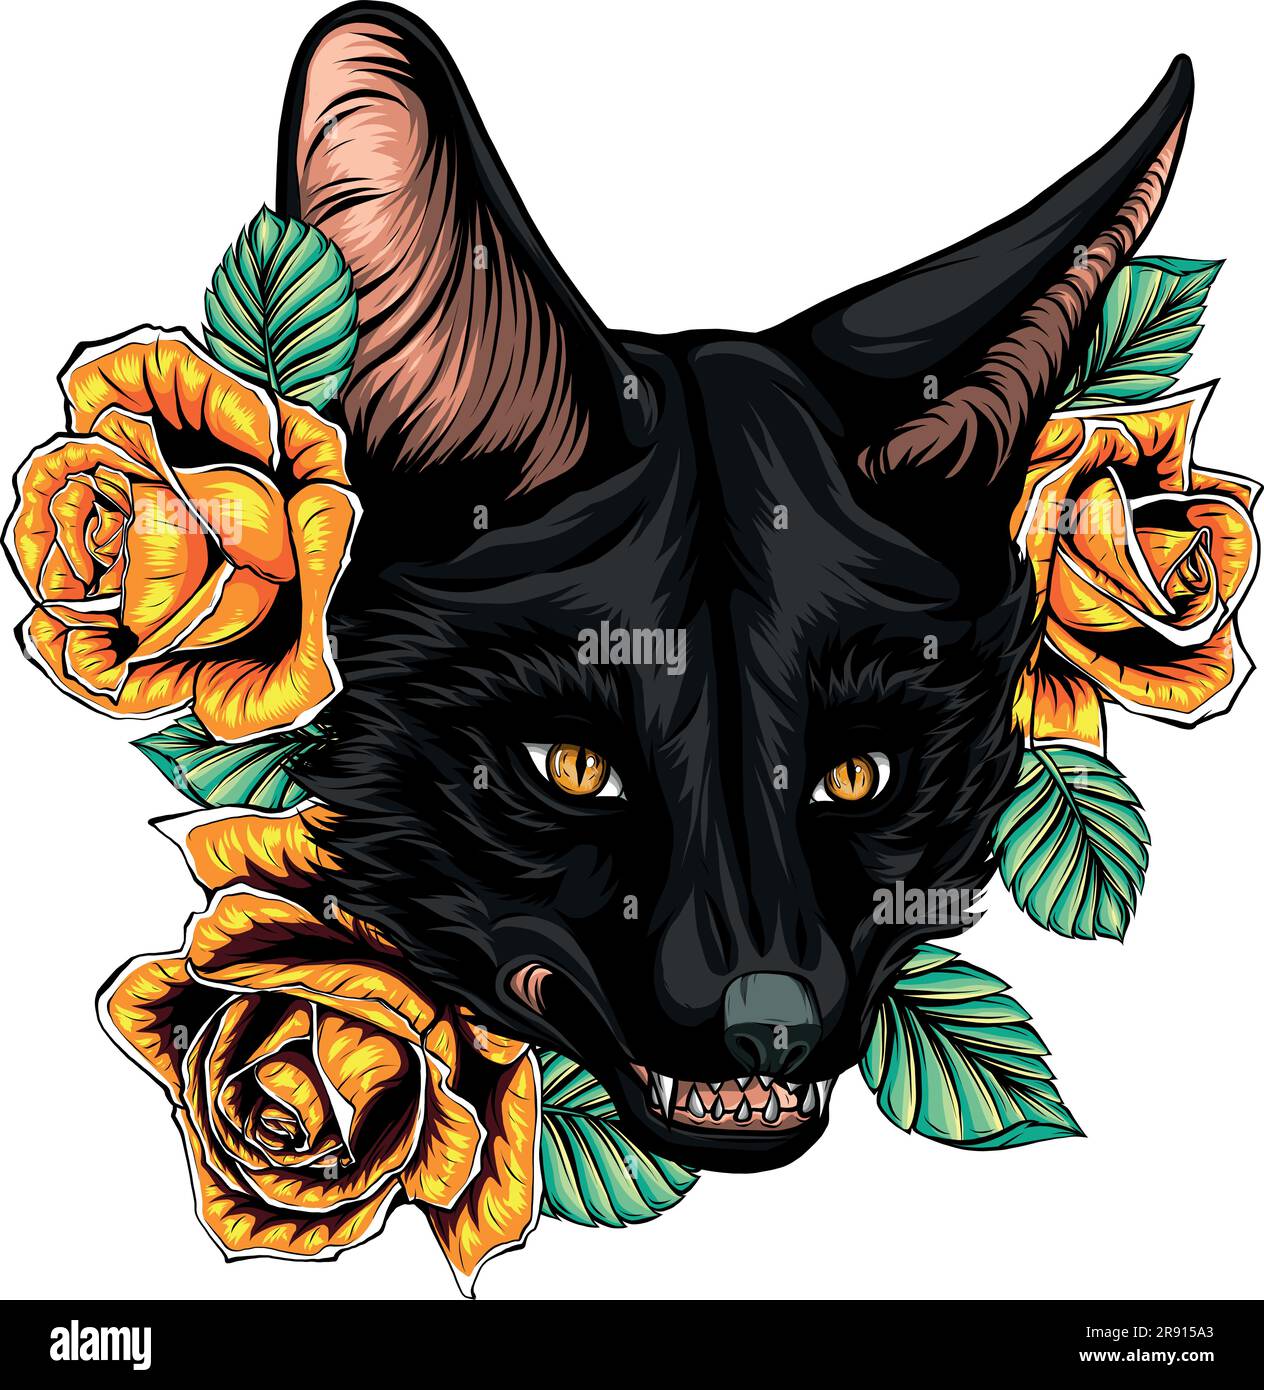 illustration vectorielle de la tête de renard avec des roses Illustration de Vecteur